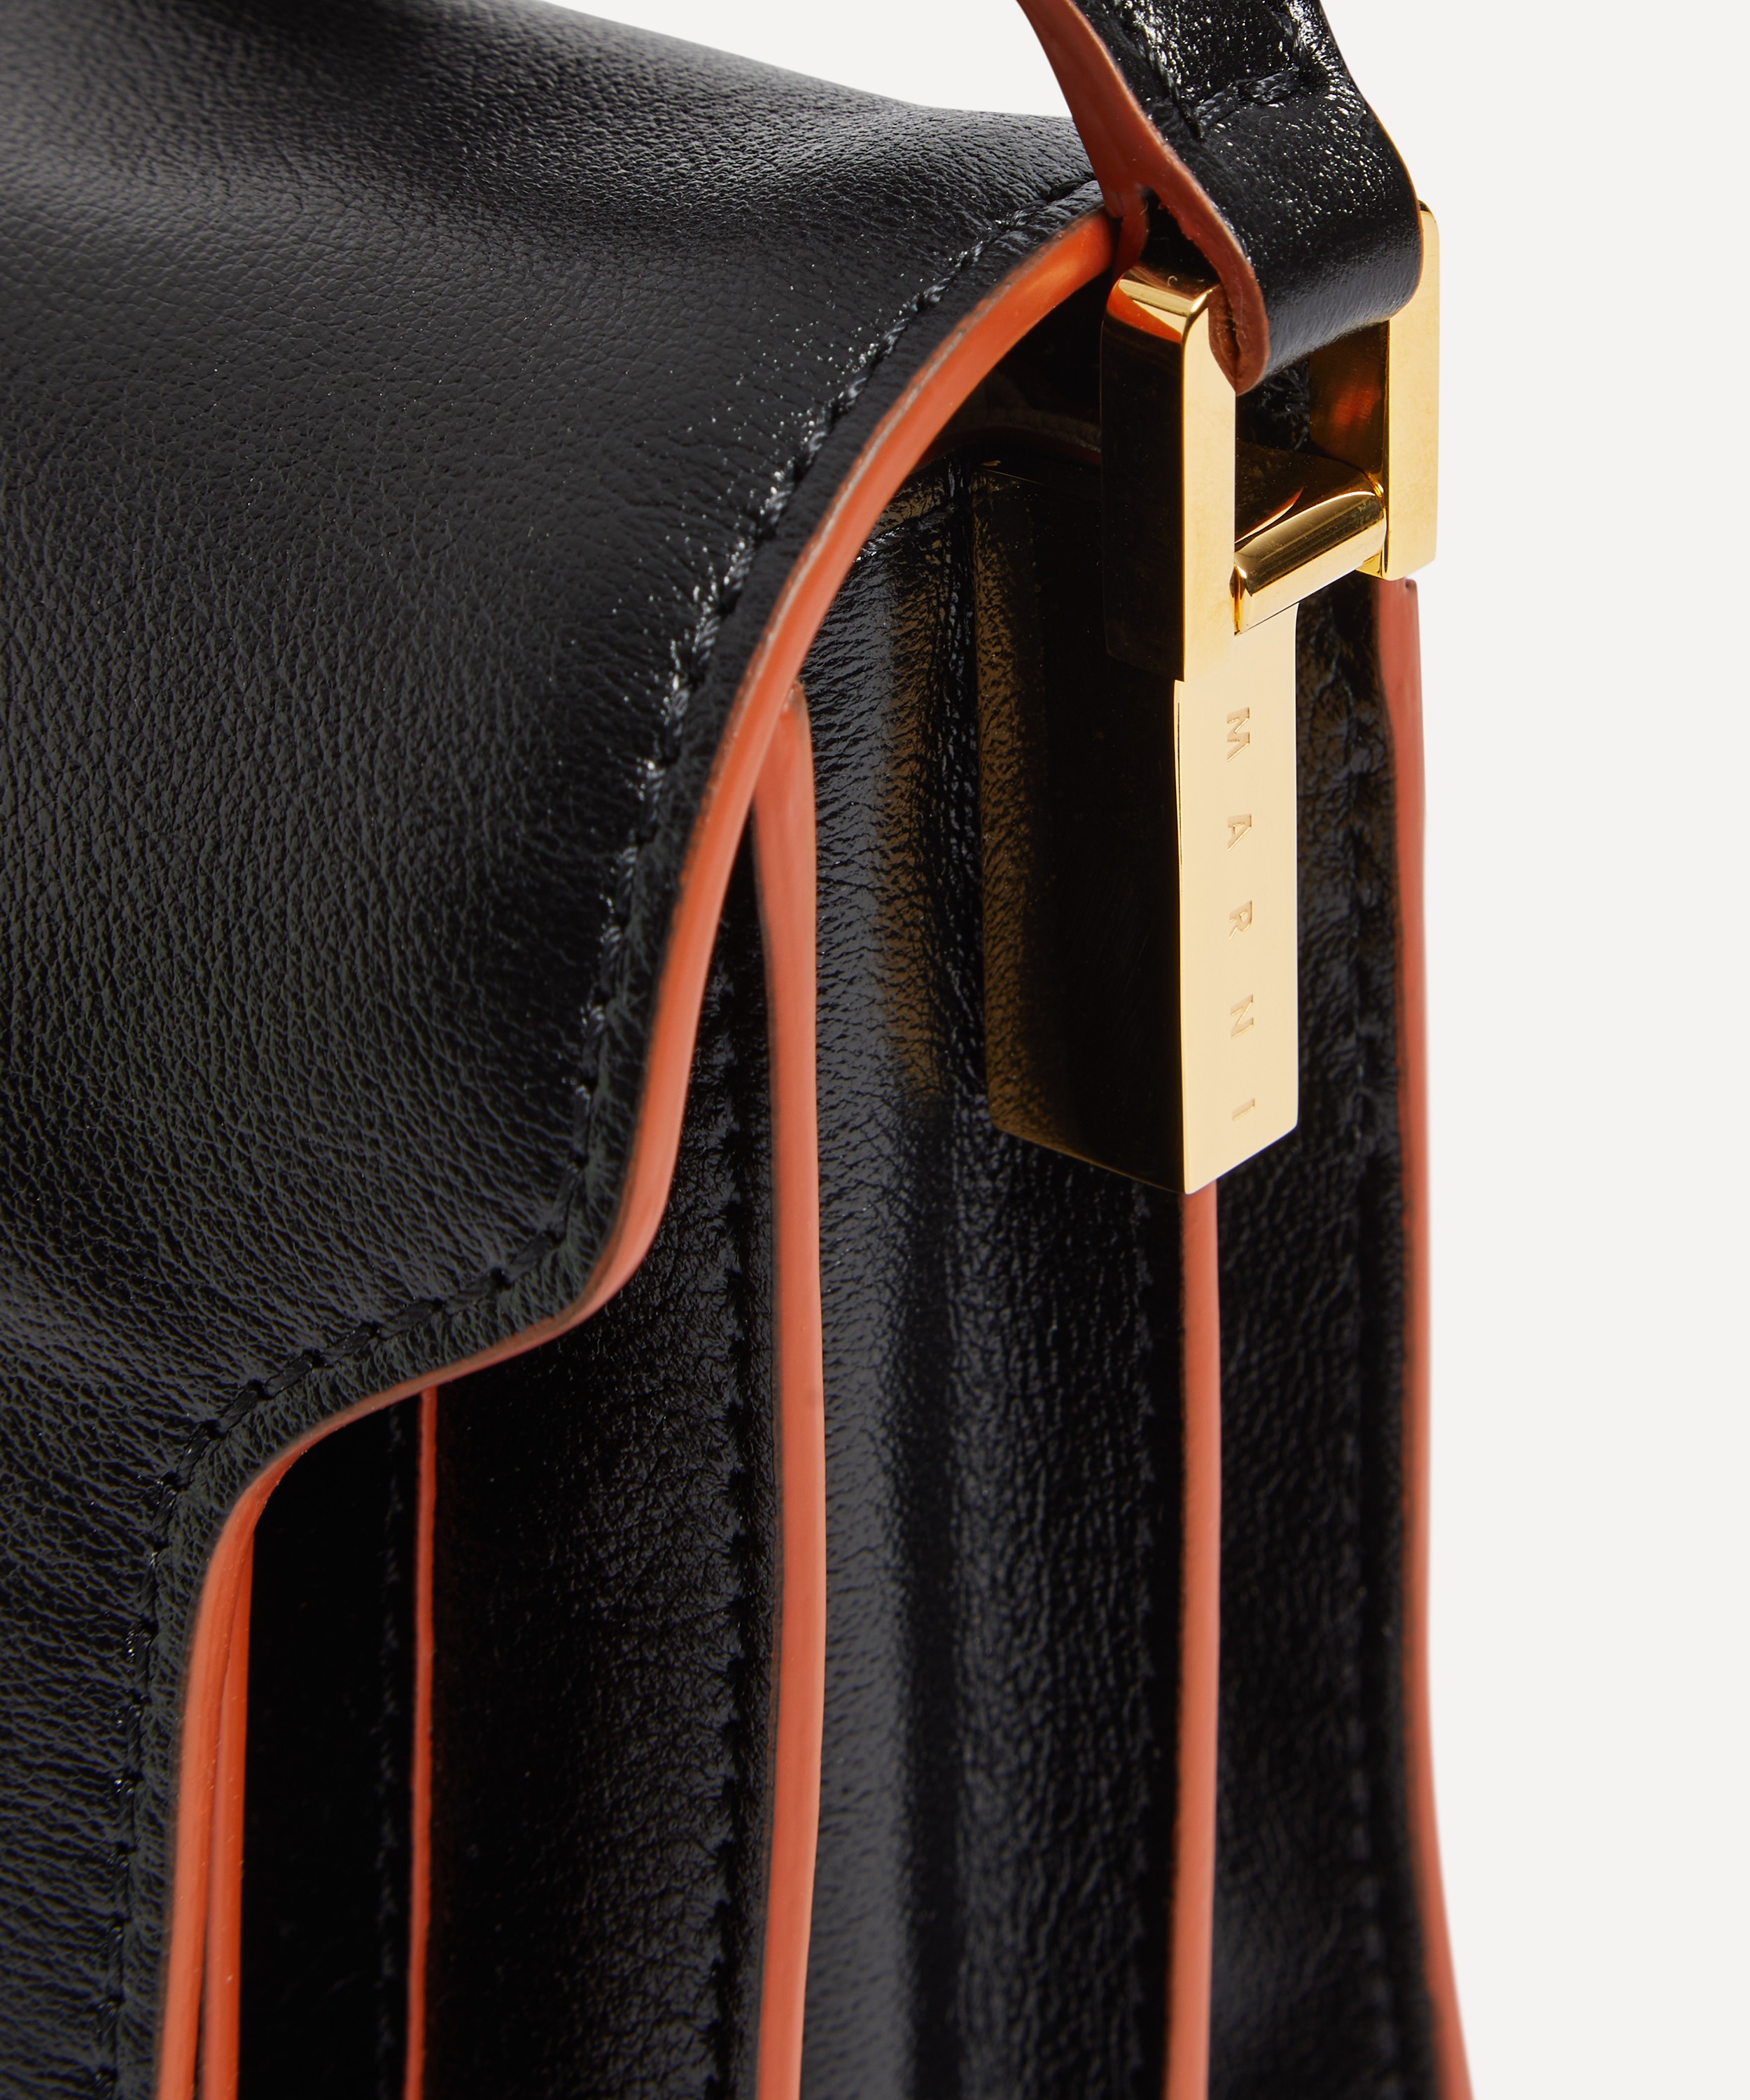 Trunk Soft Medium Leather Shoulder Bag in Black - Marni